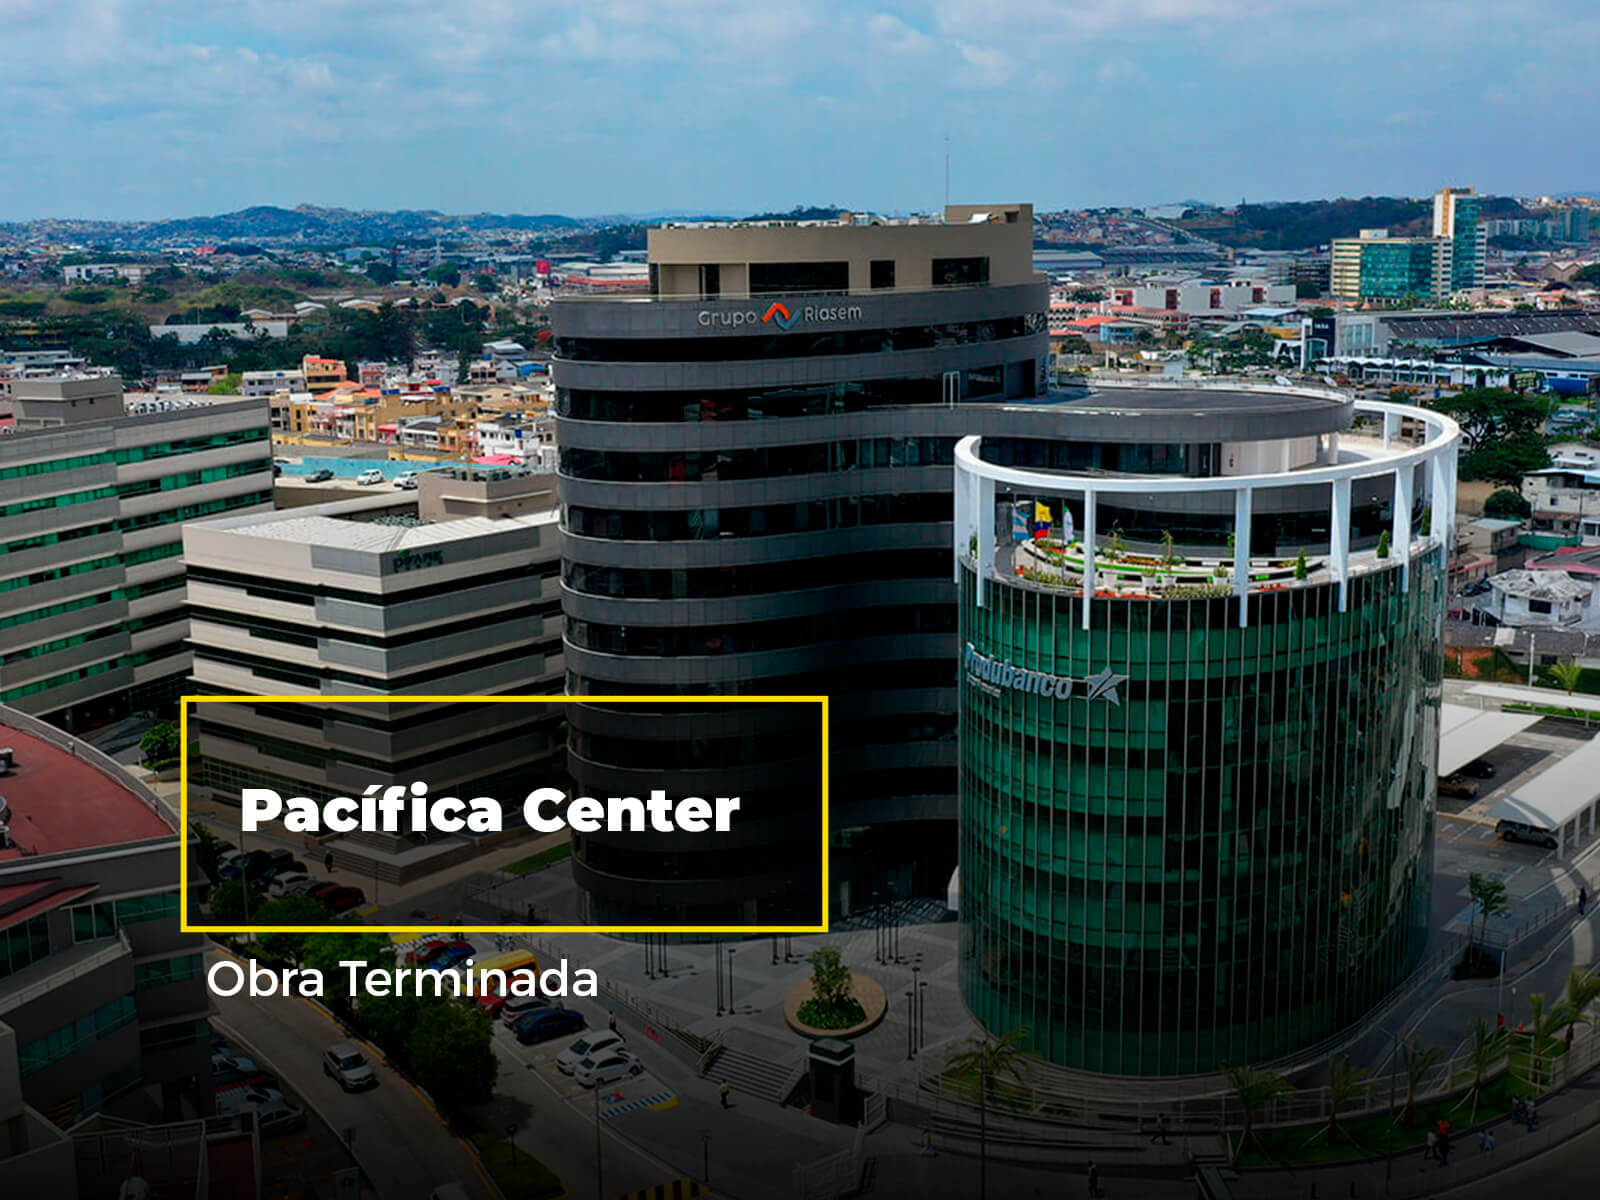 Pacifica Center